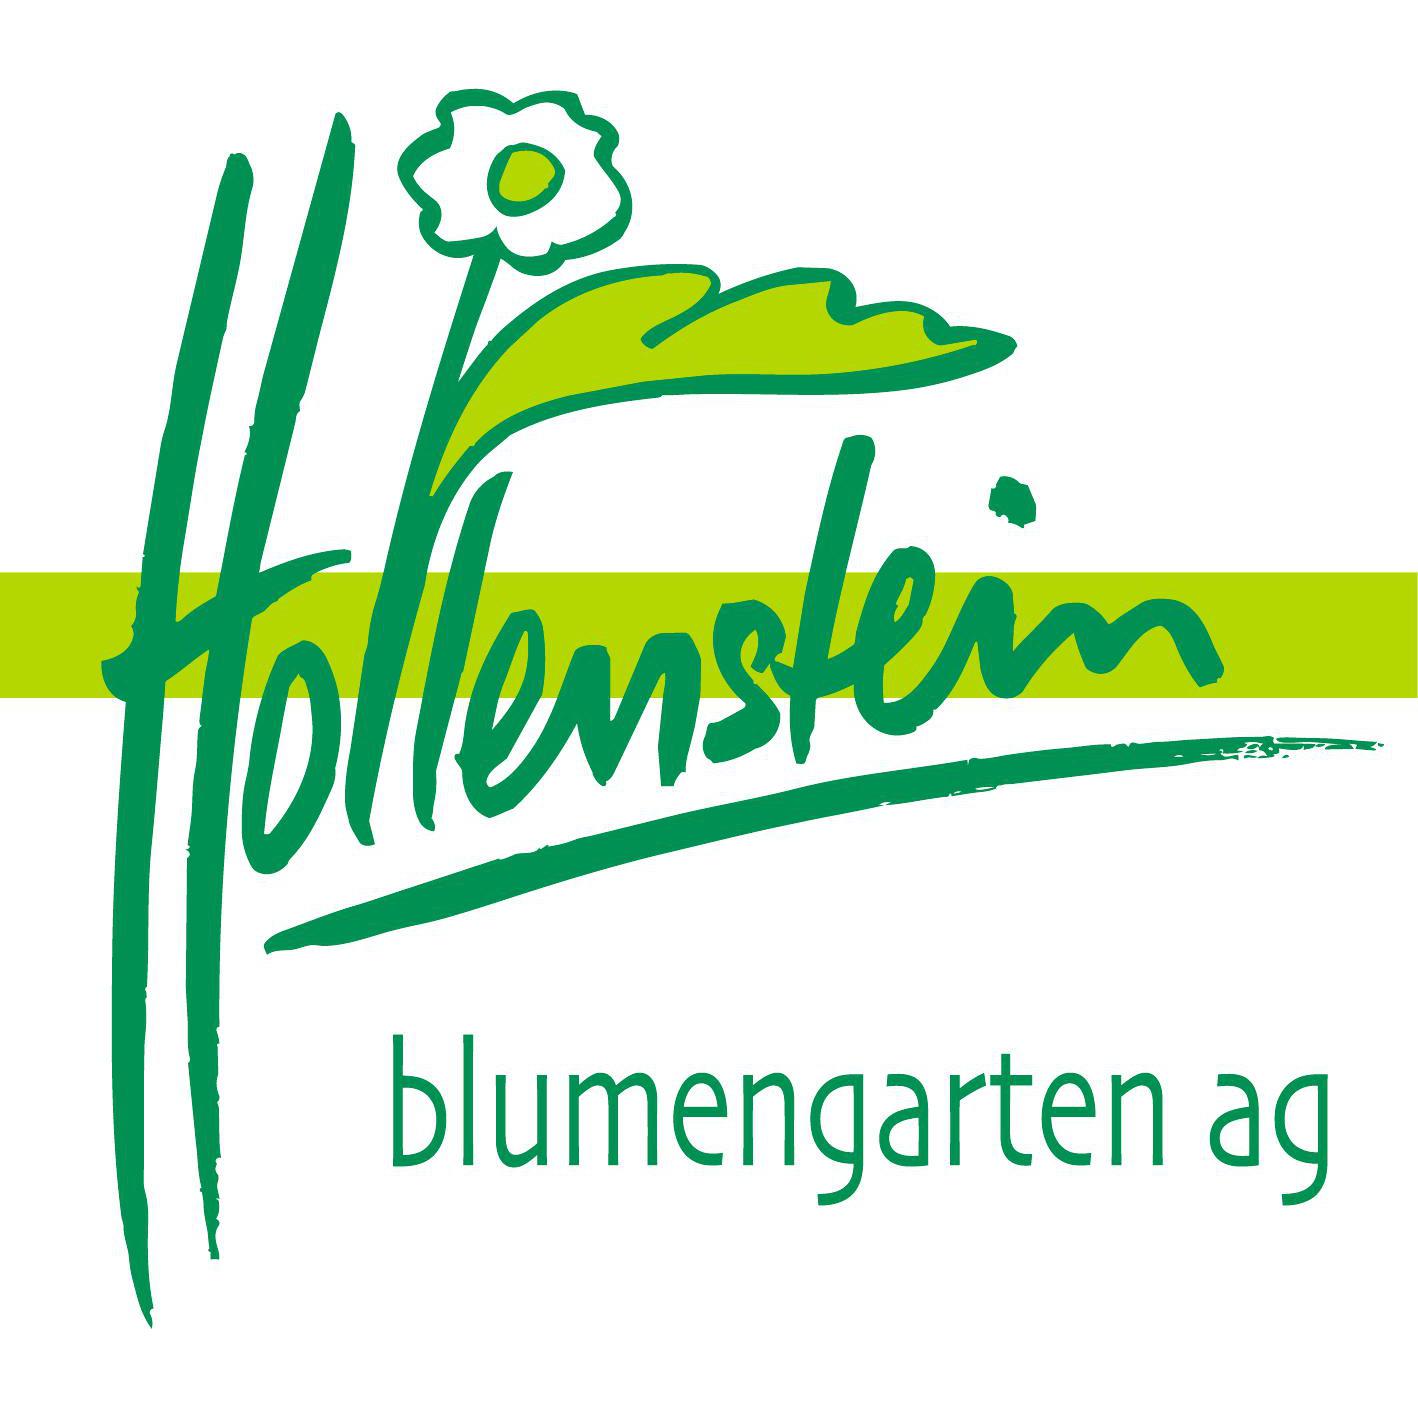 hollenstein blumengarten ag, Blumenshop, Gärtnerei, Gartenbau Logo